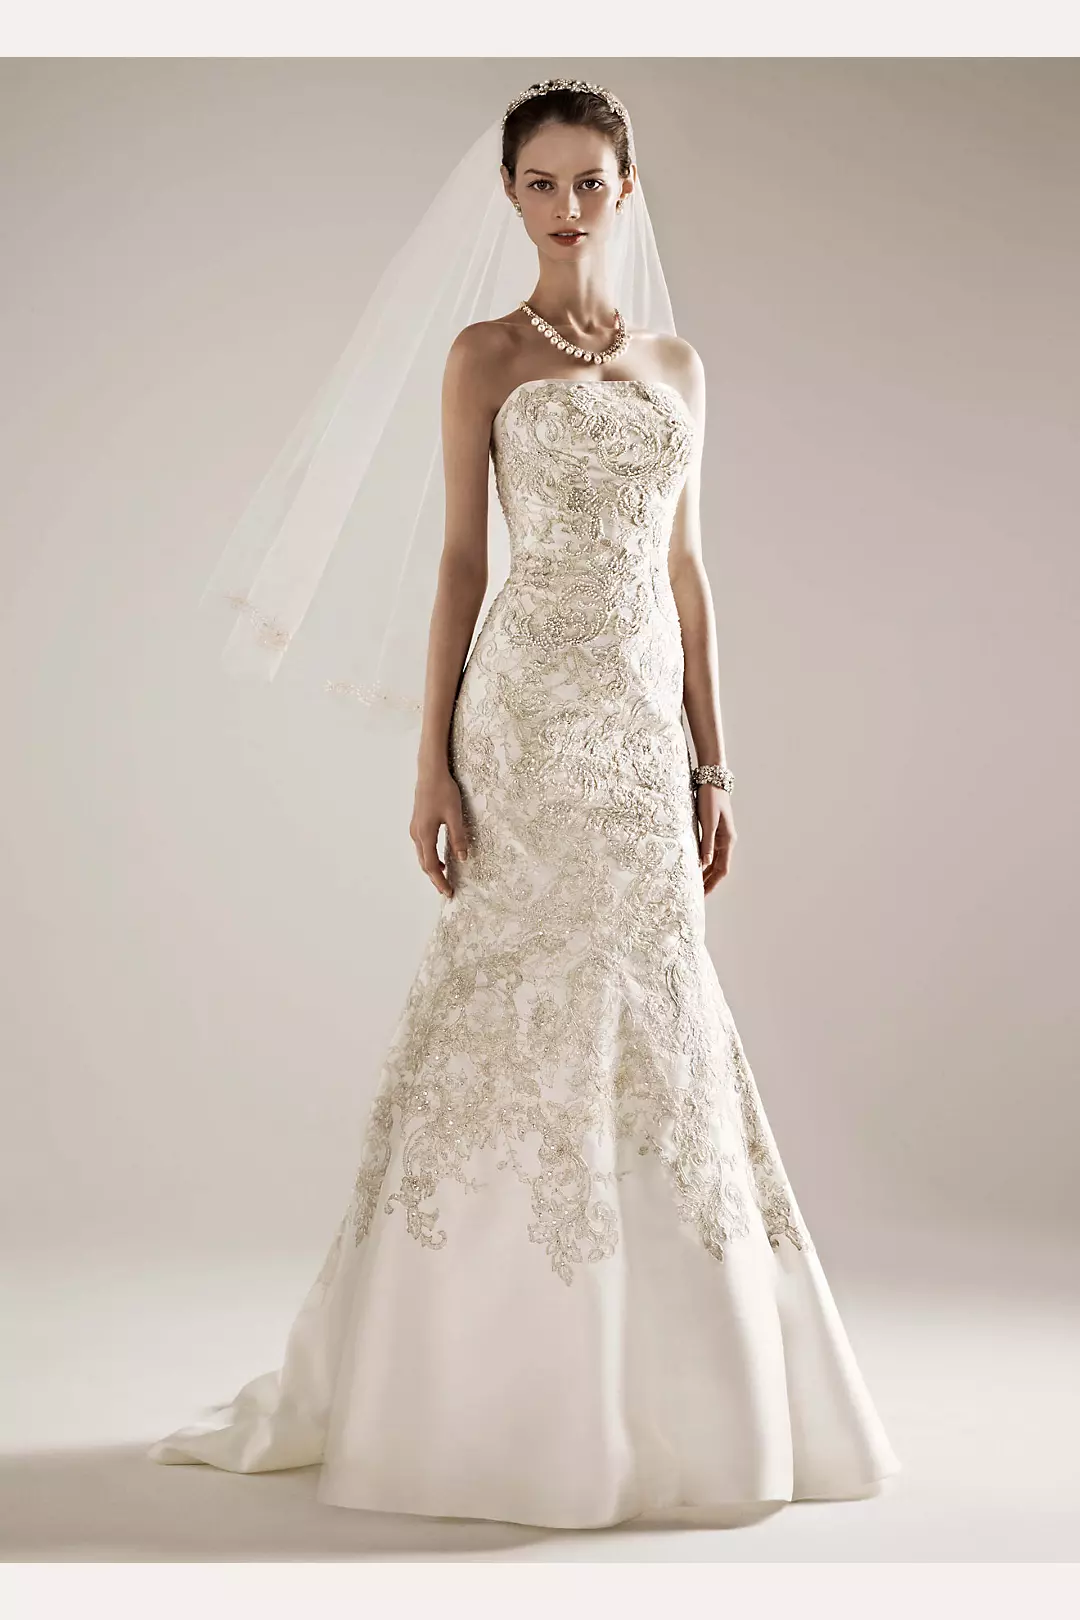 Oleg Cassini Mikado Wedding Dress with Lace  Image 3